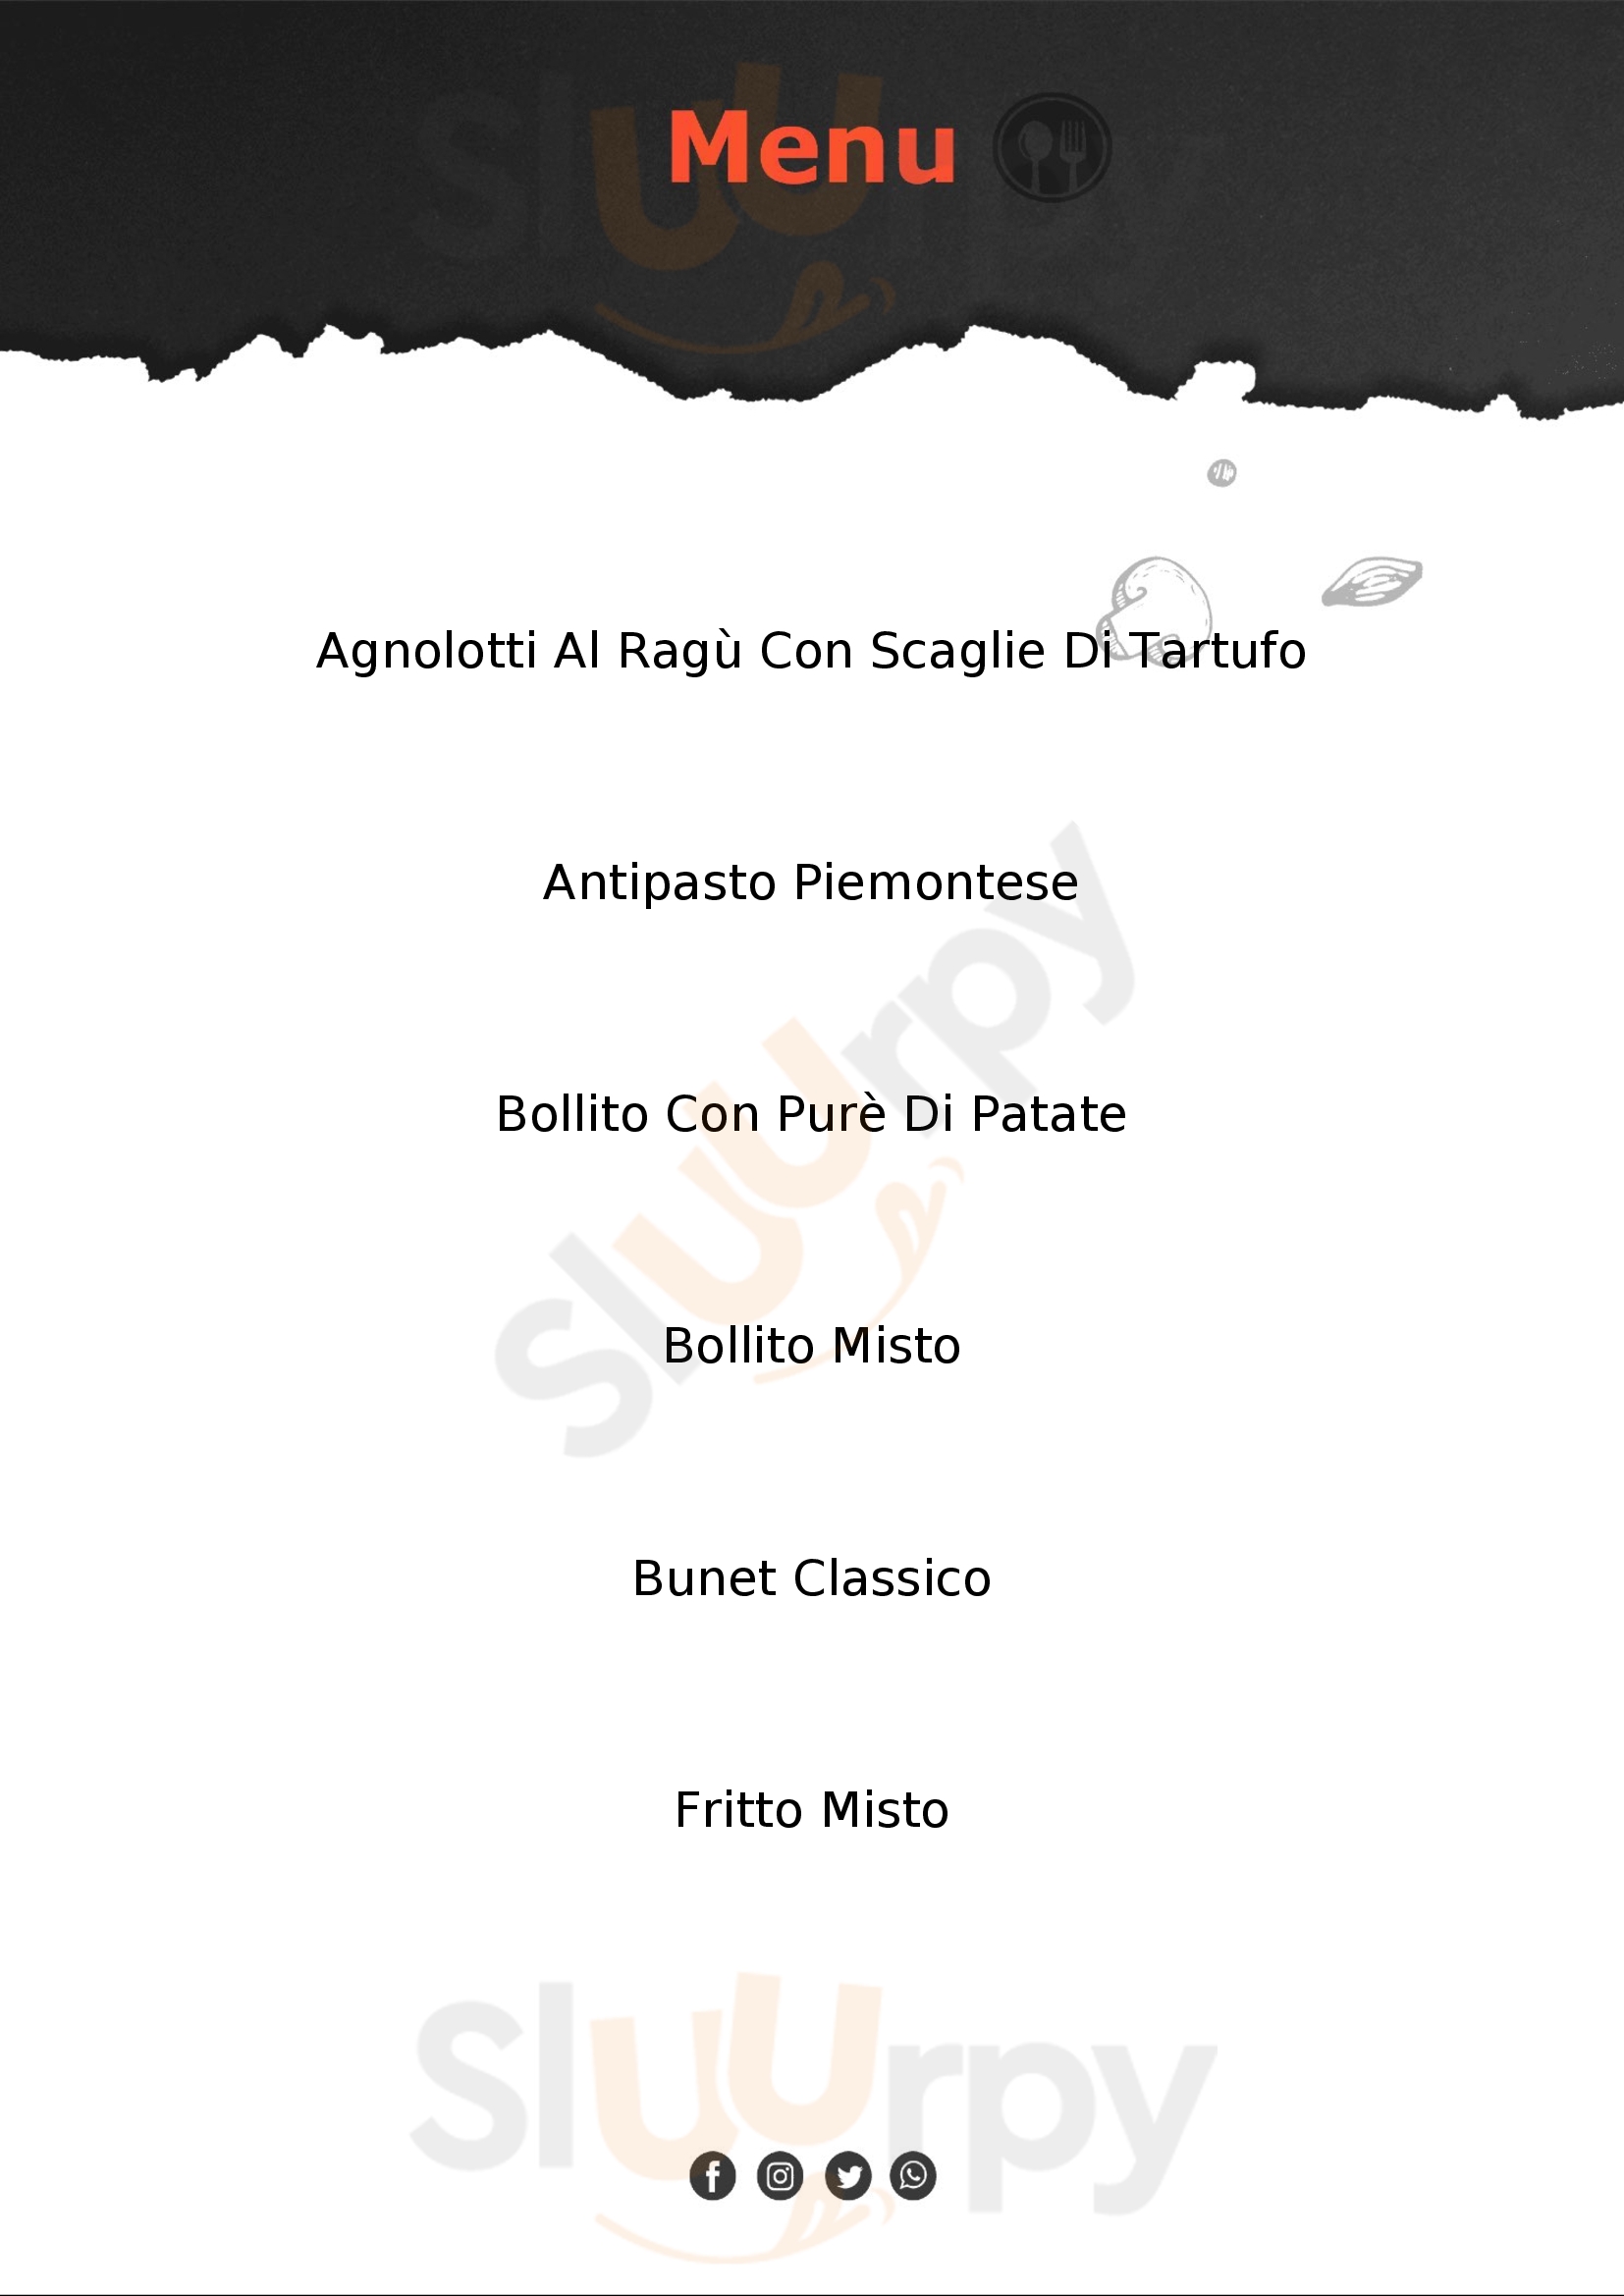 Osteria Amarotto Casale Monferrato menù 1 pagina